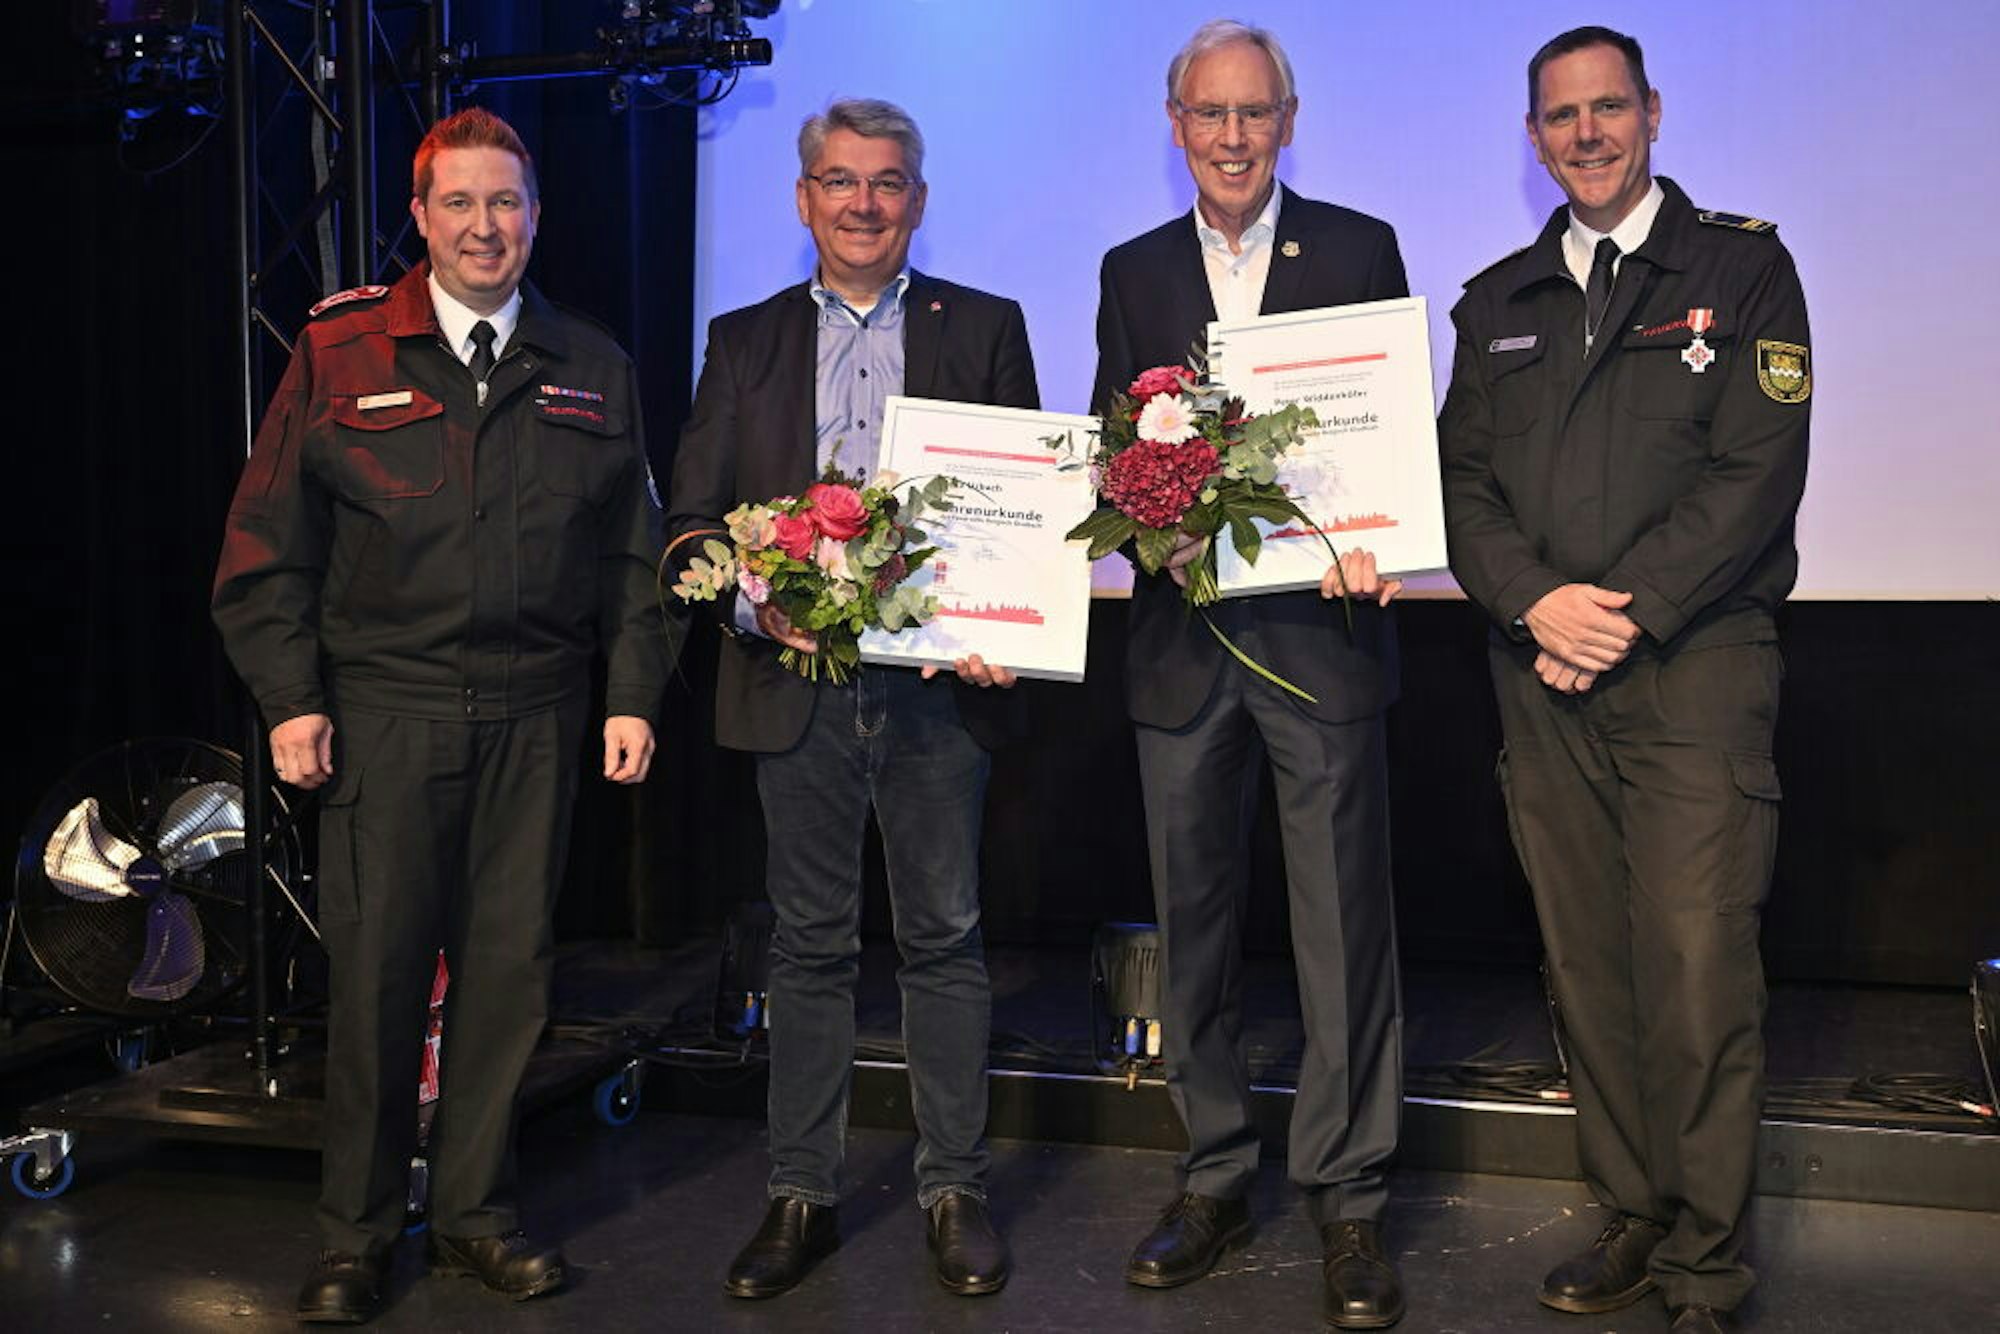 Ehrenurkunden erhielten Lutz Urbach (2.v.l.) und Peter Widdenhöfer (2.v.r.) von Feuerwehrchef Jörg Köhler (r.) und seinem Stellvertreter Frank Haag (i.)..